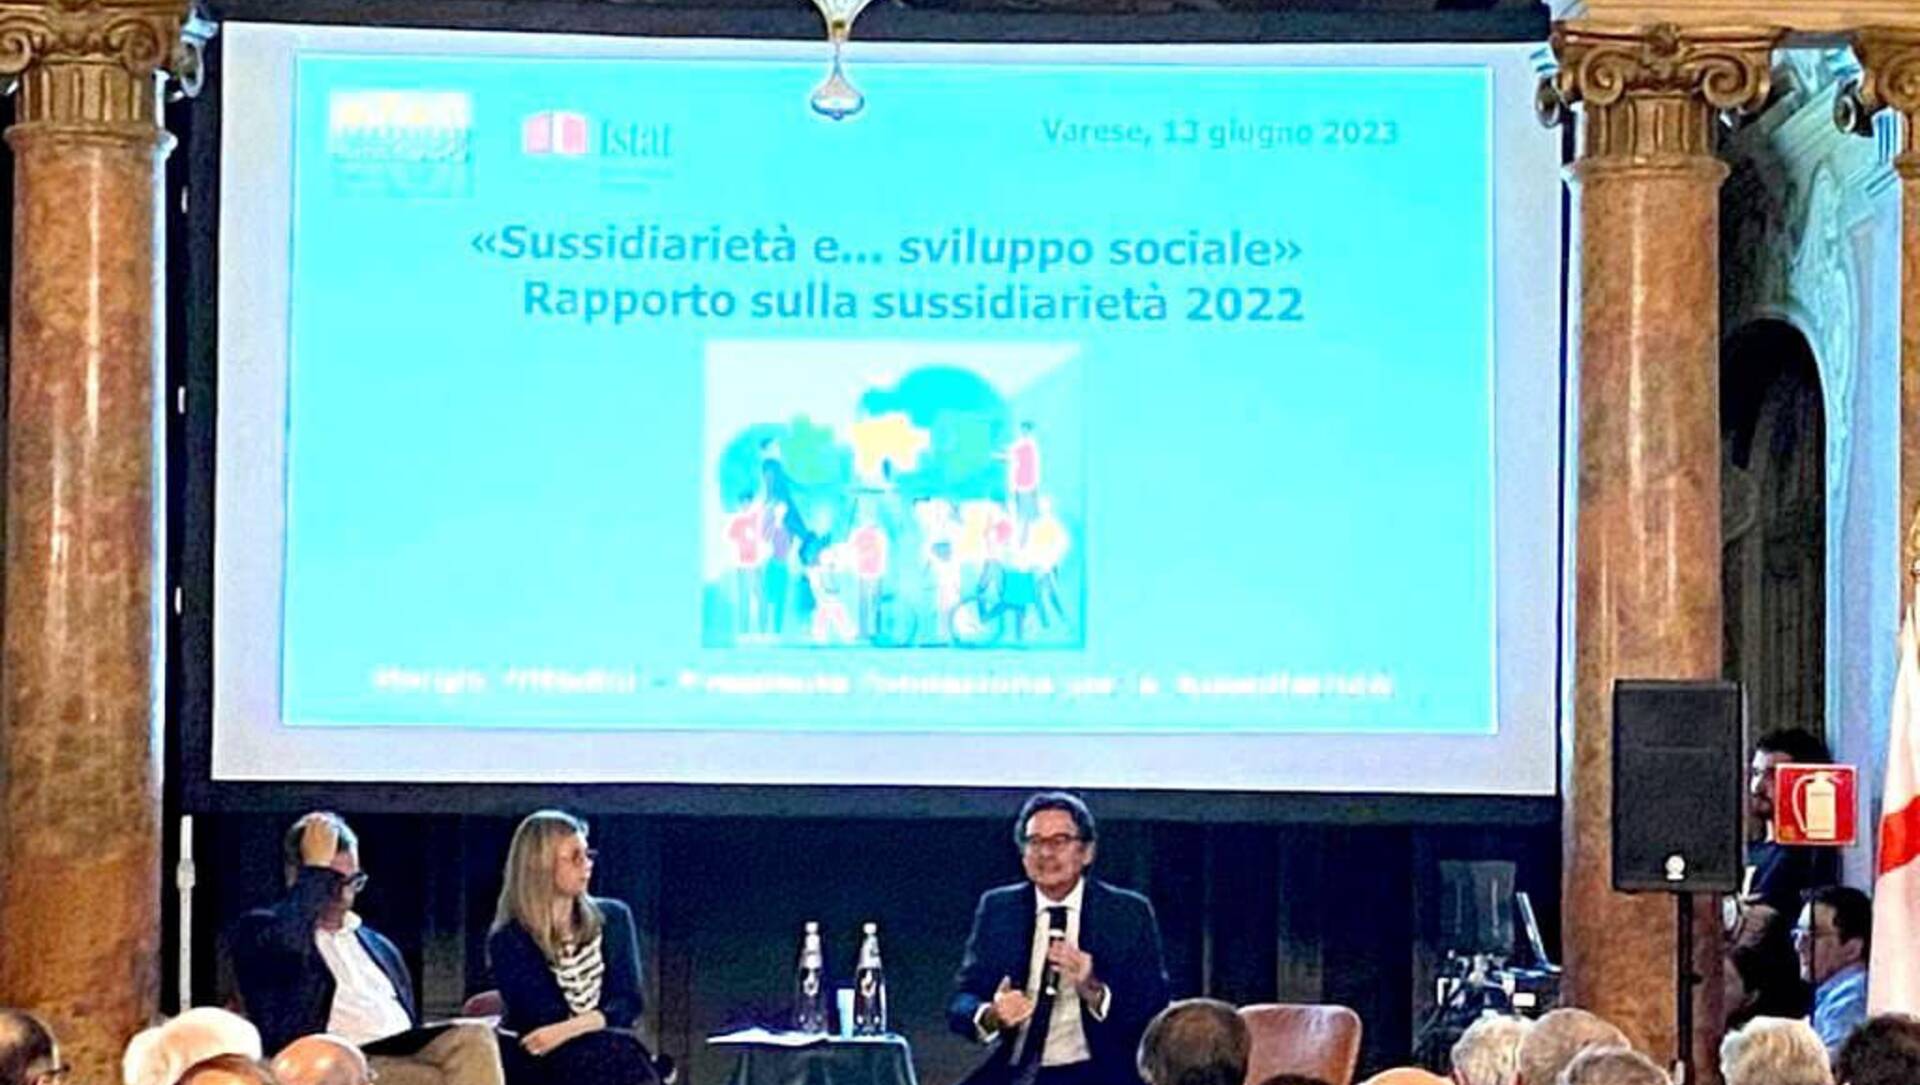 Gadda (Iv) al convegno di Varese sulla sussidiarietà: “Messaggio culturale bipartisan”